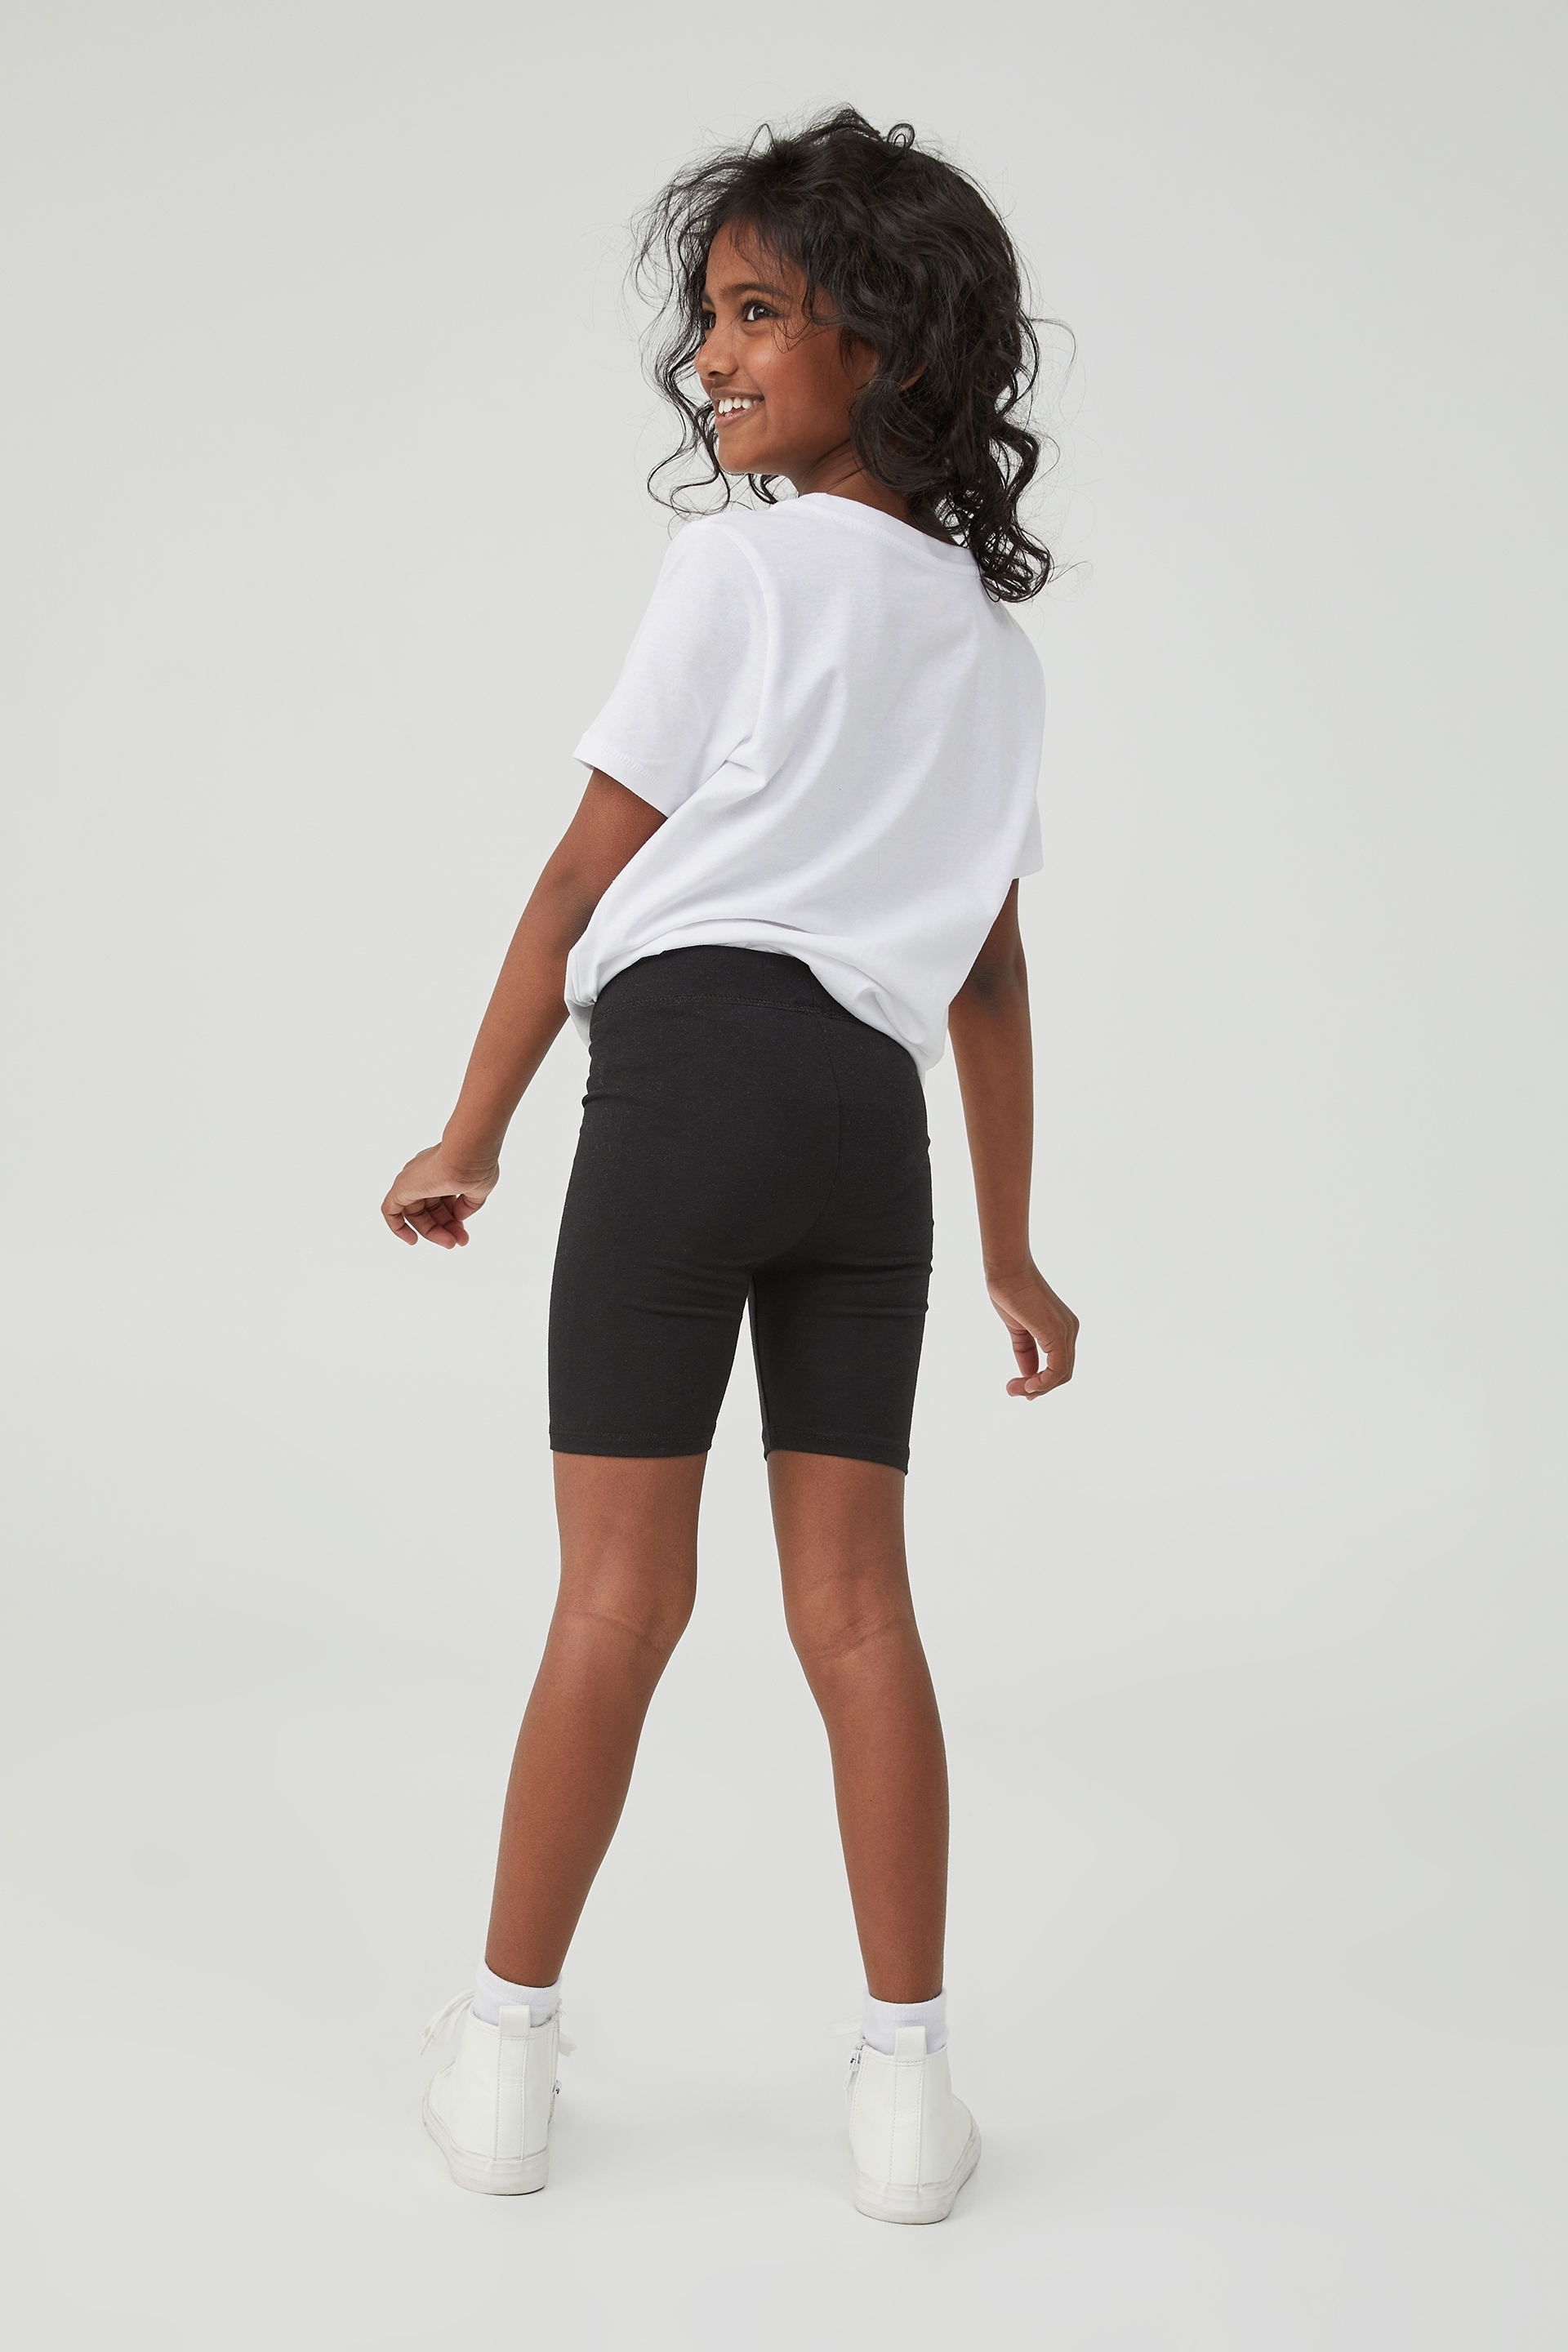 Biker Shorts For Girls, Kids Biker Short Black